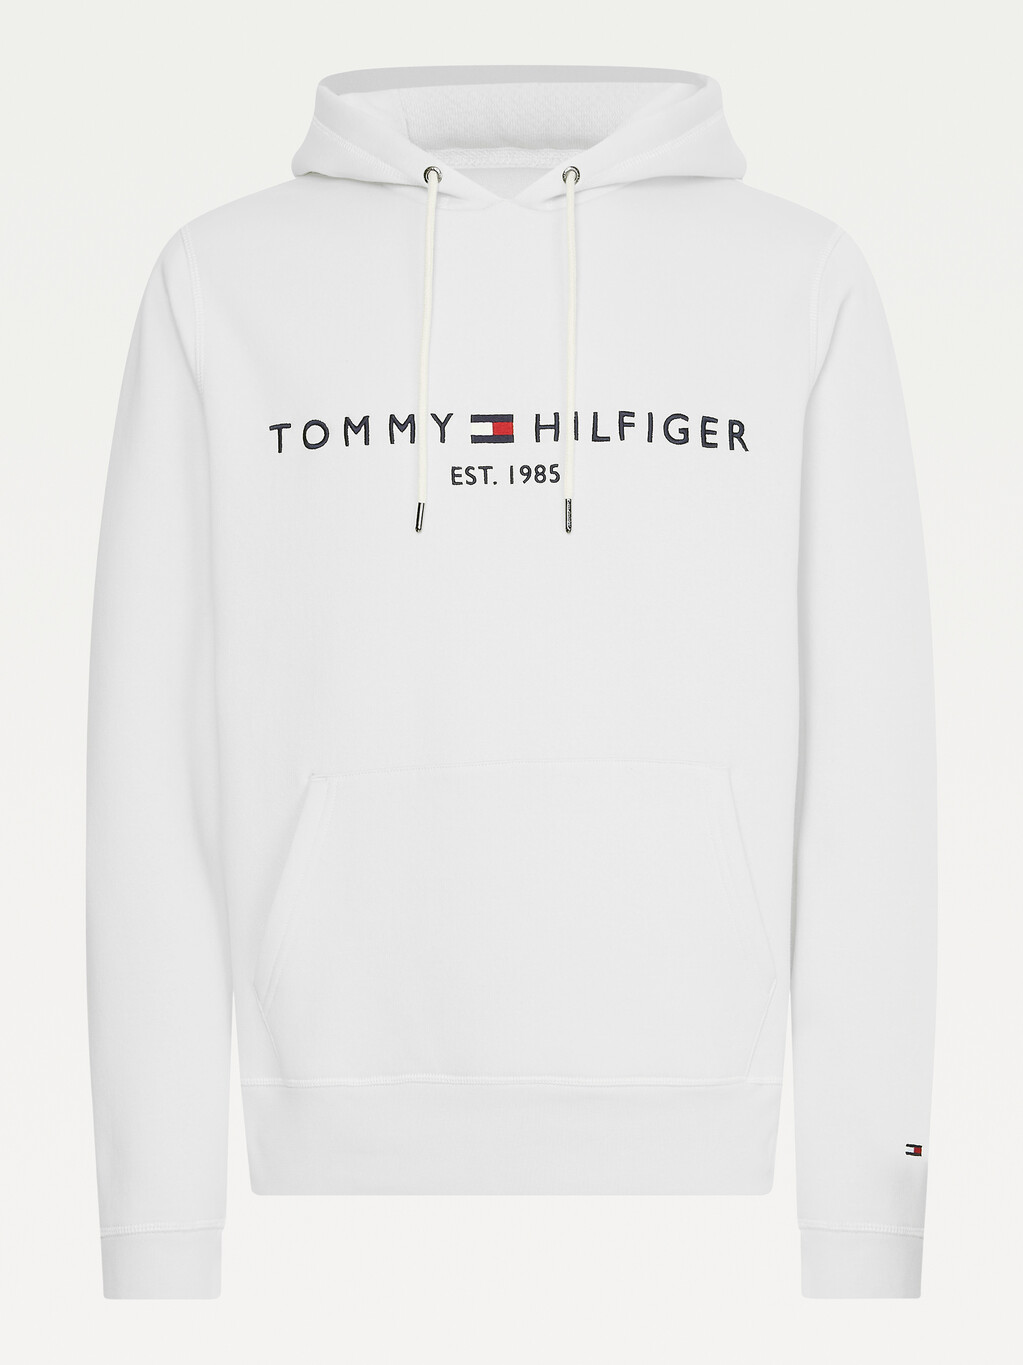 Tommy Hilfiger Flex 刷毛連帽上衣, White, hi-res